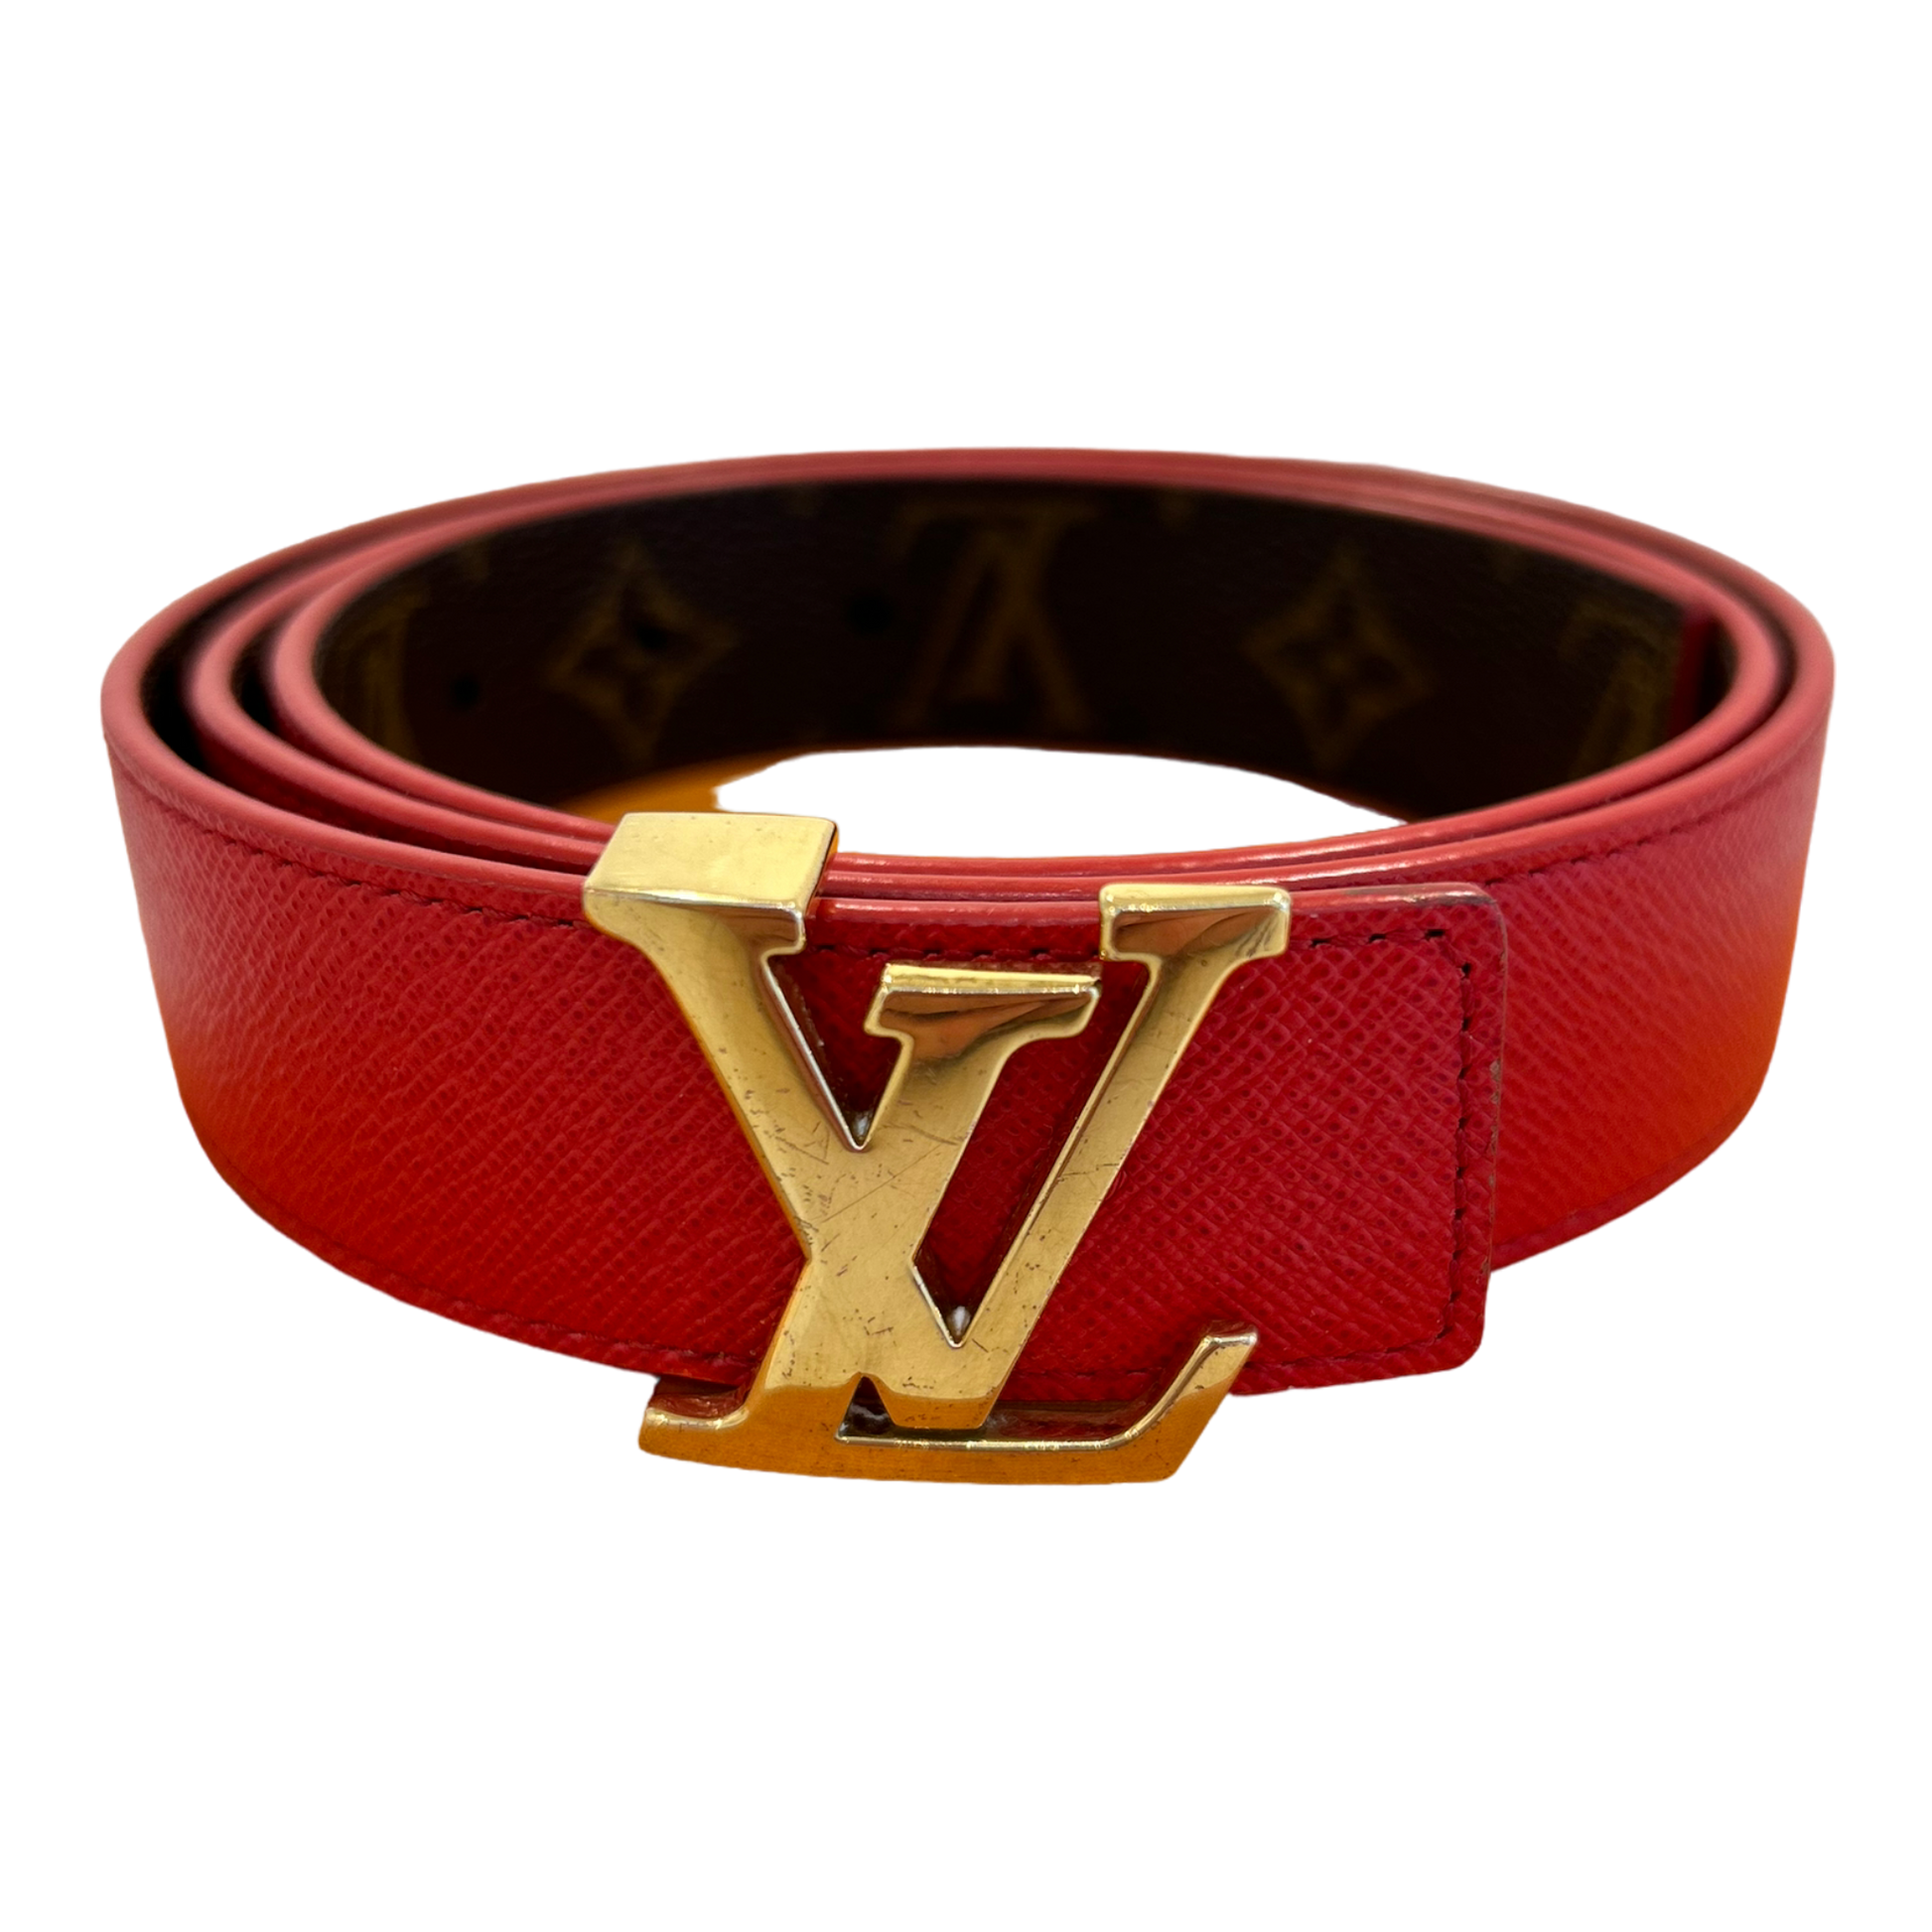 Louis Vuitton LV Initiales 30mm Reversible Belt Black Leather. Size 100 cm